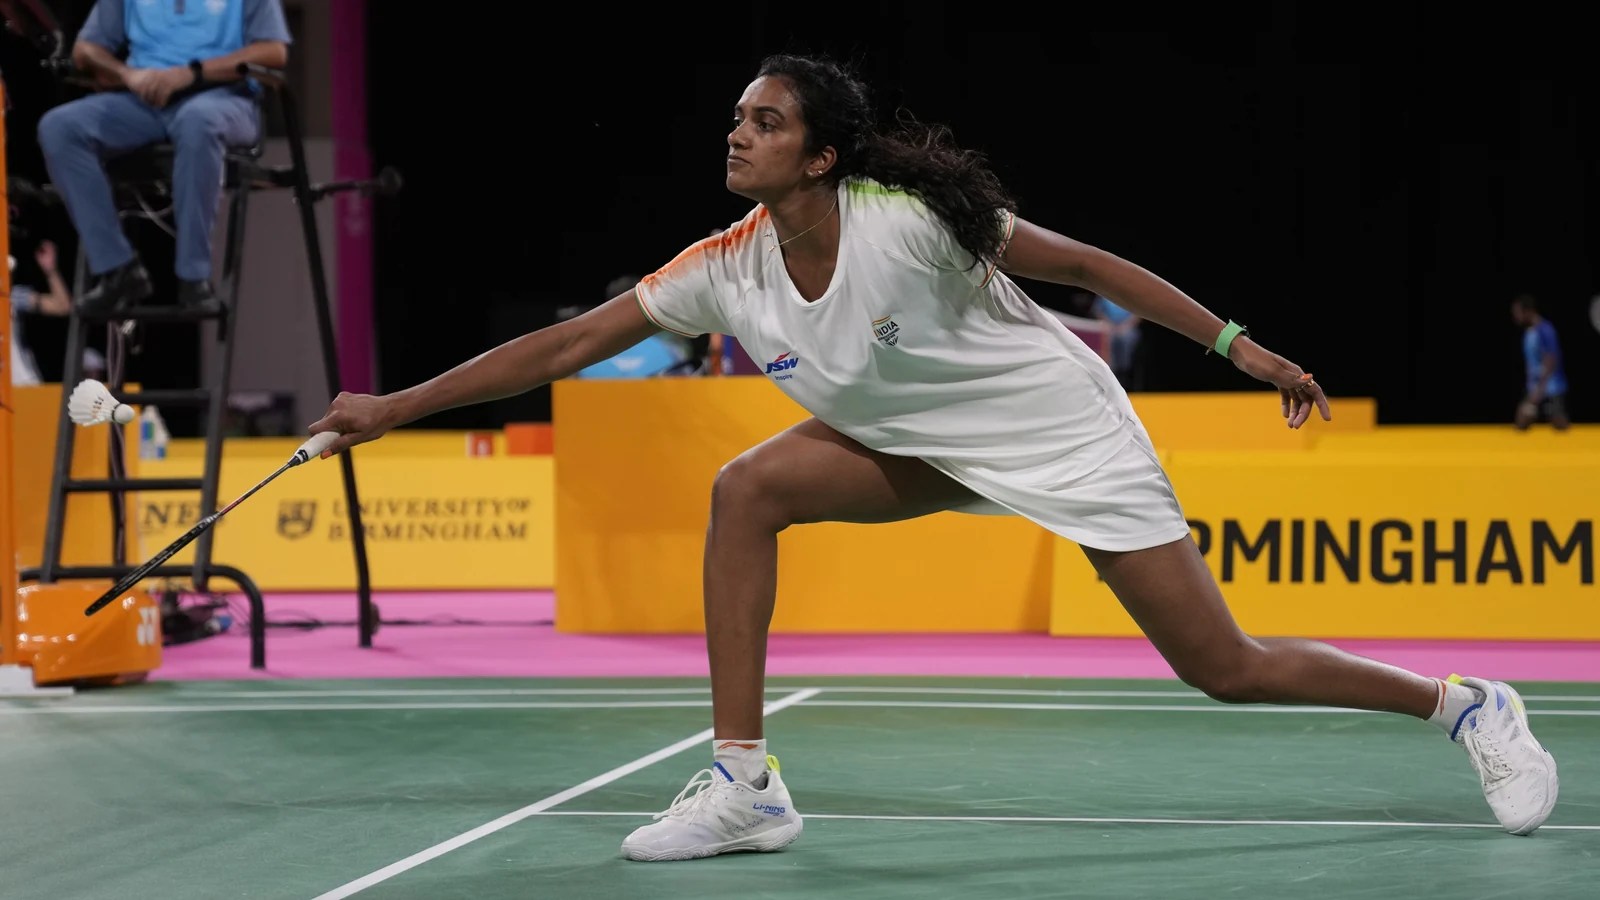 CWG 2022 Badminton CANLI: Savunan şampiyonlar Hindistan hakimiyetini sürdürmeyi hedefliyor, ikinci grup maçında Sri Lanka ile karşı karşıya - Hindistan vs Sri Lanka Badminton çatışmasını takip edin